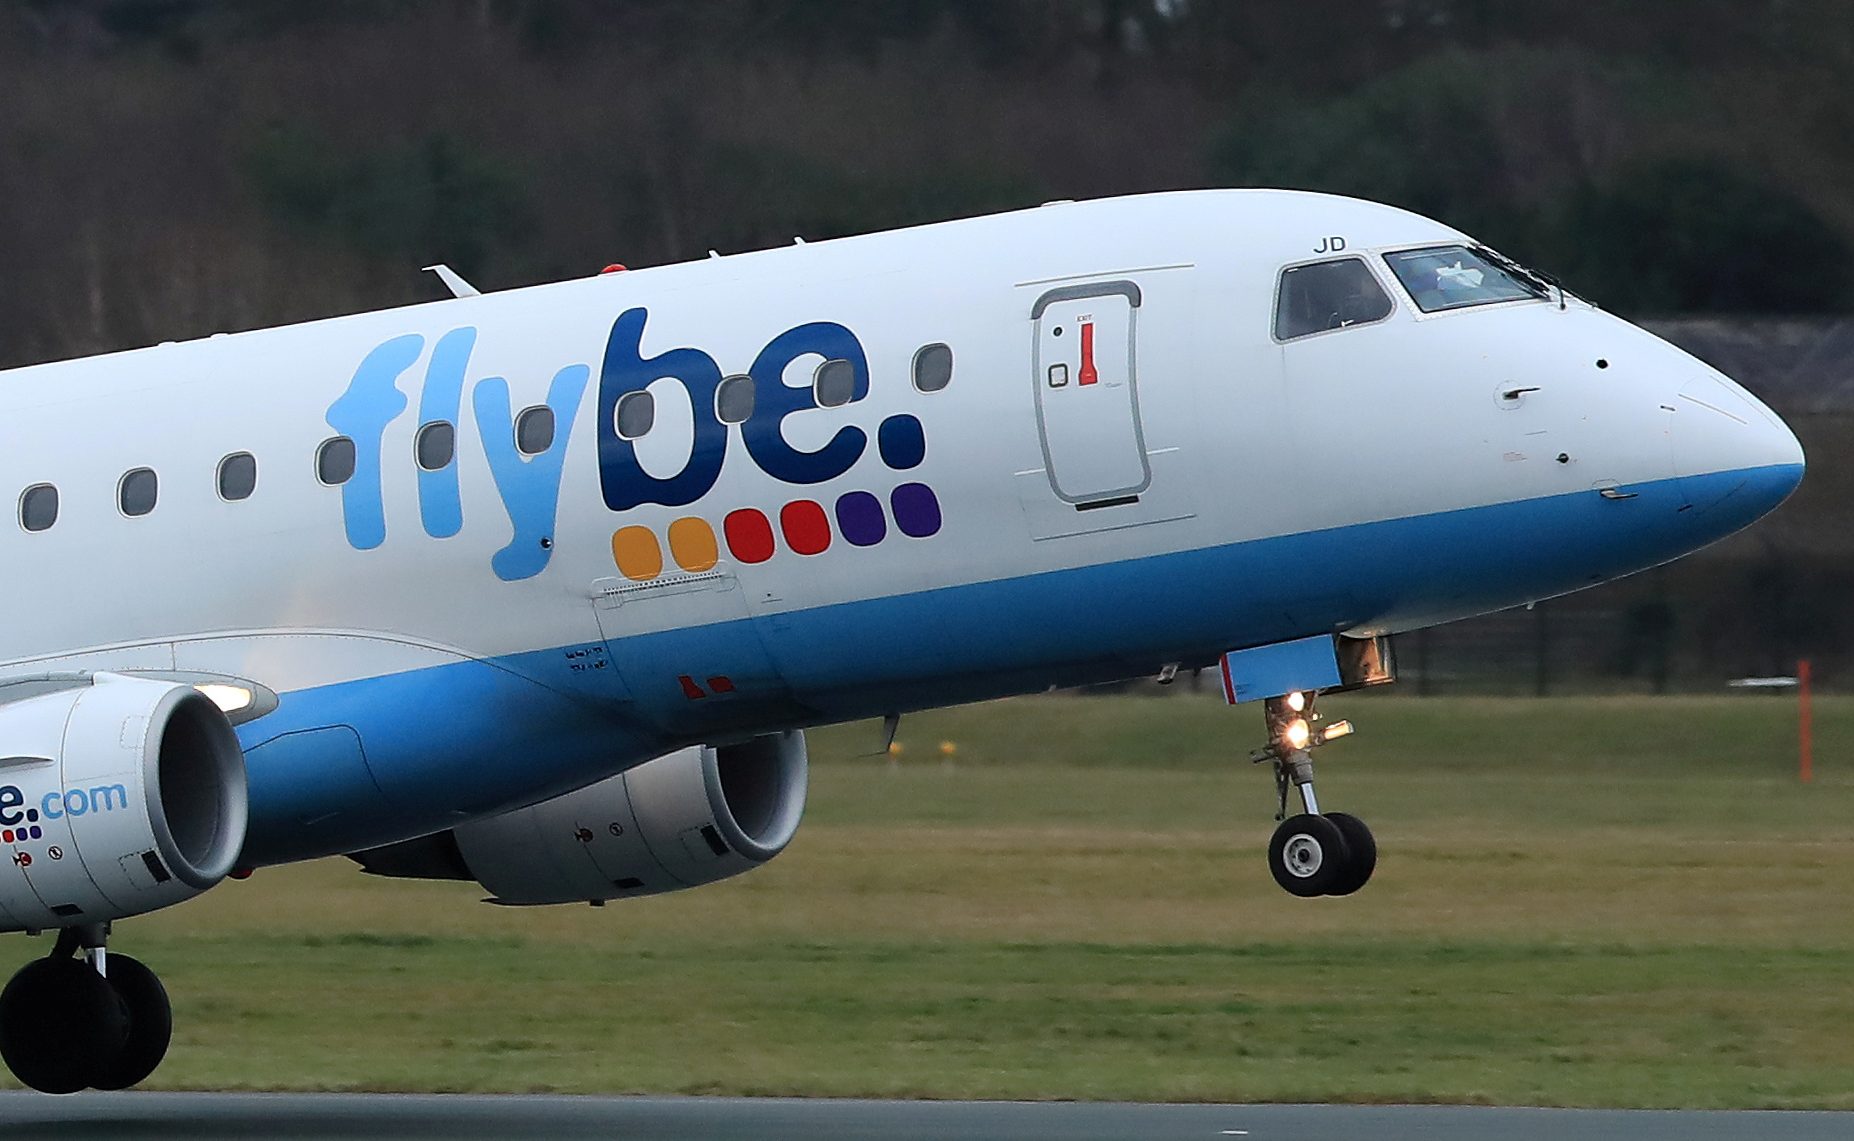 Britse luchtvaartmaatschappij Flybe heeft uitstel van betaling heeft aangevraag. Alle activiteiten worden gestaakt.